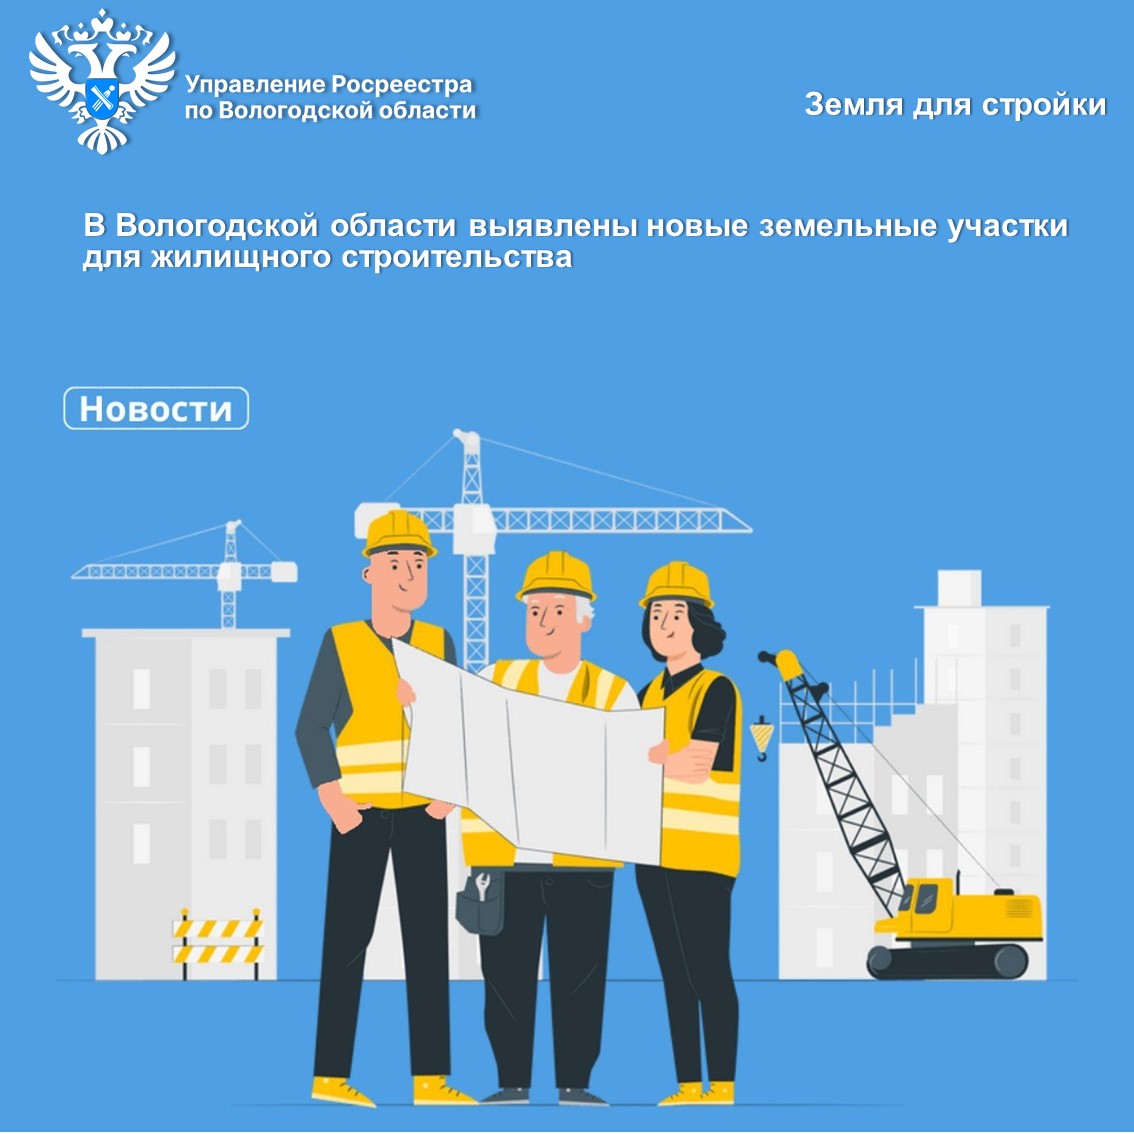 Сервис Росреестра «Земля для стройки» пополнился новыми земельными участками для жилищного строительства в Вологодской области.